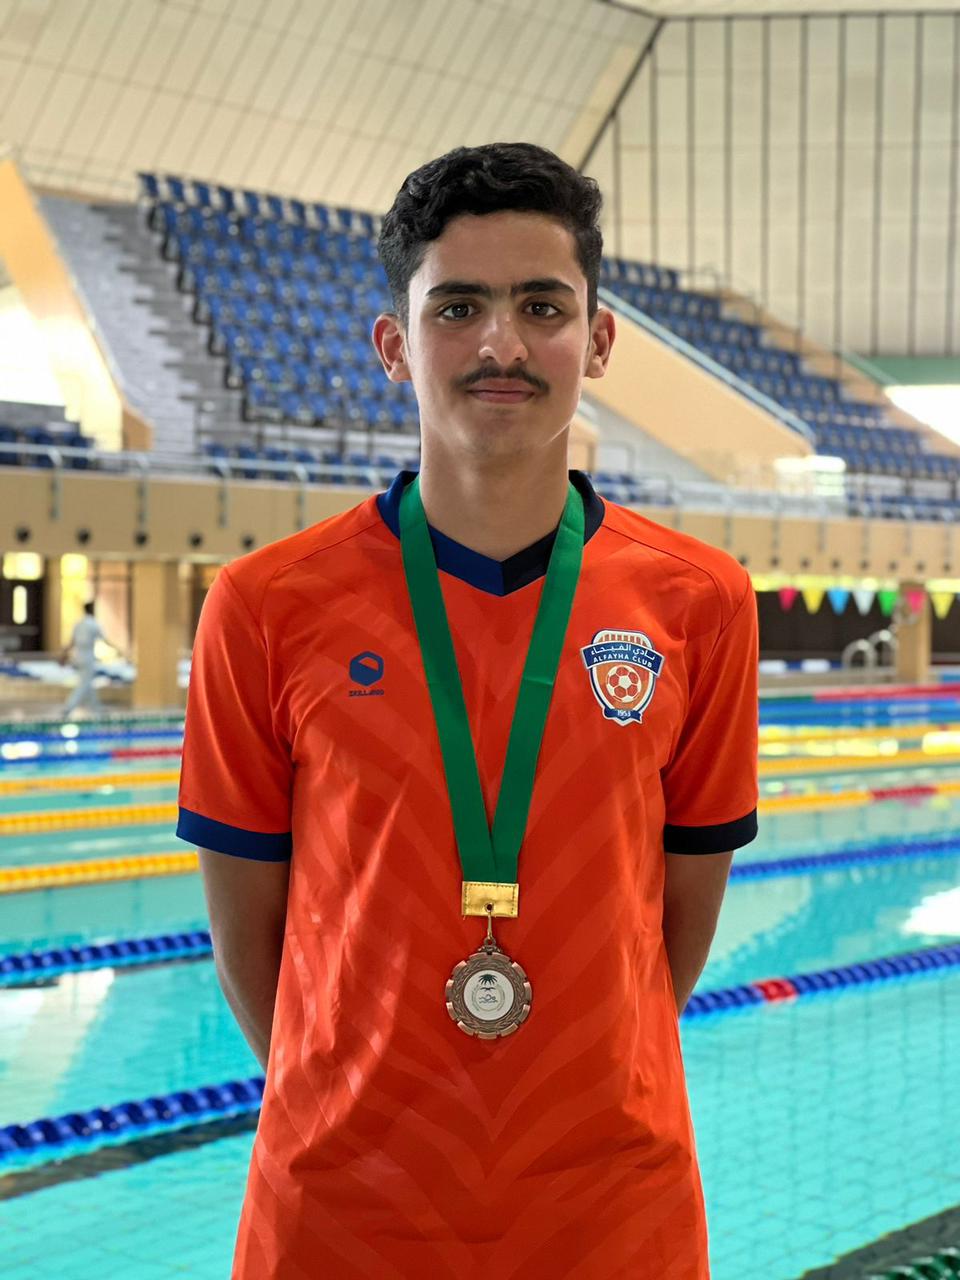 المنضم حديثاً لسباحة الفيحاء داود الرشيدي يحقق برونزية في بطولة منطقة الرياض